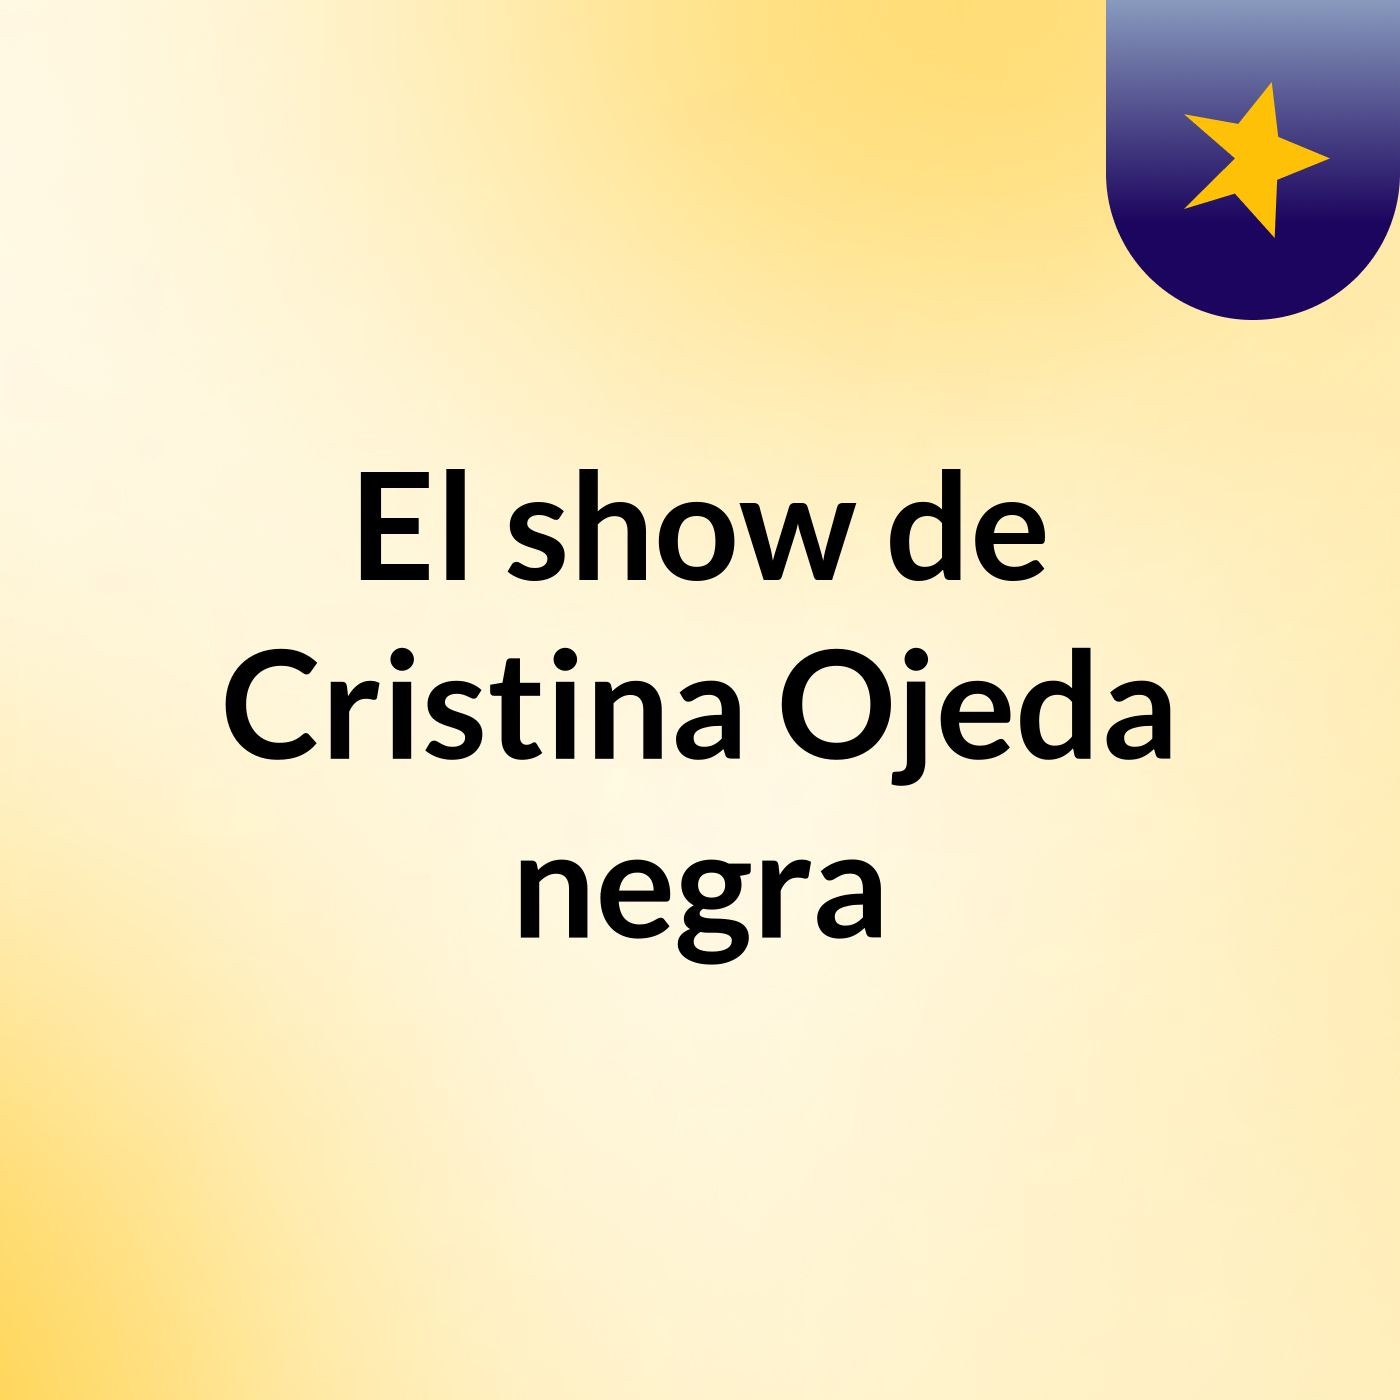 Episodio 4 - El show de Cristina Ojeda negra